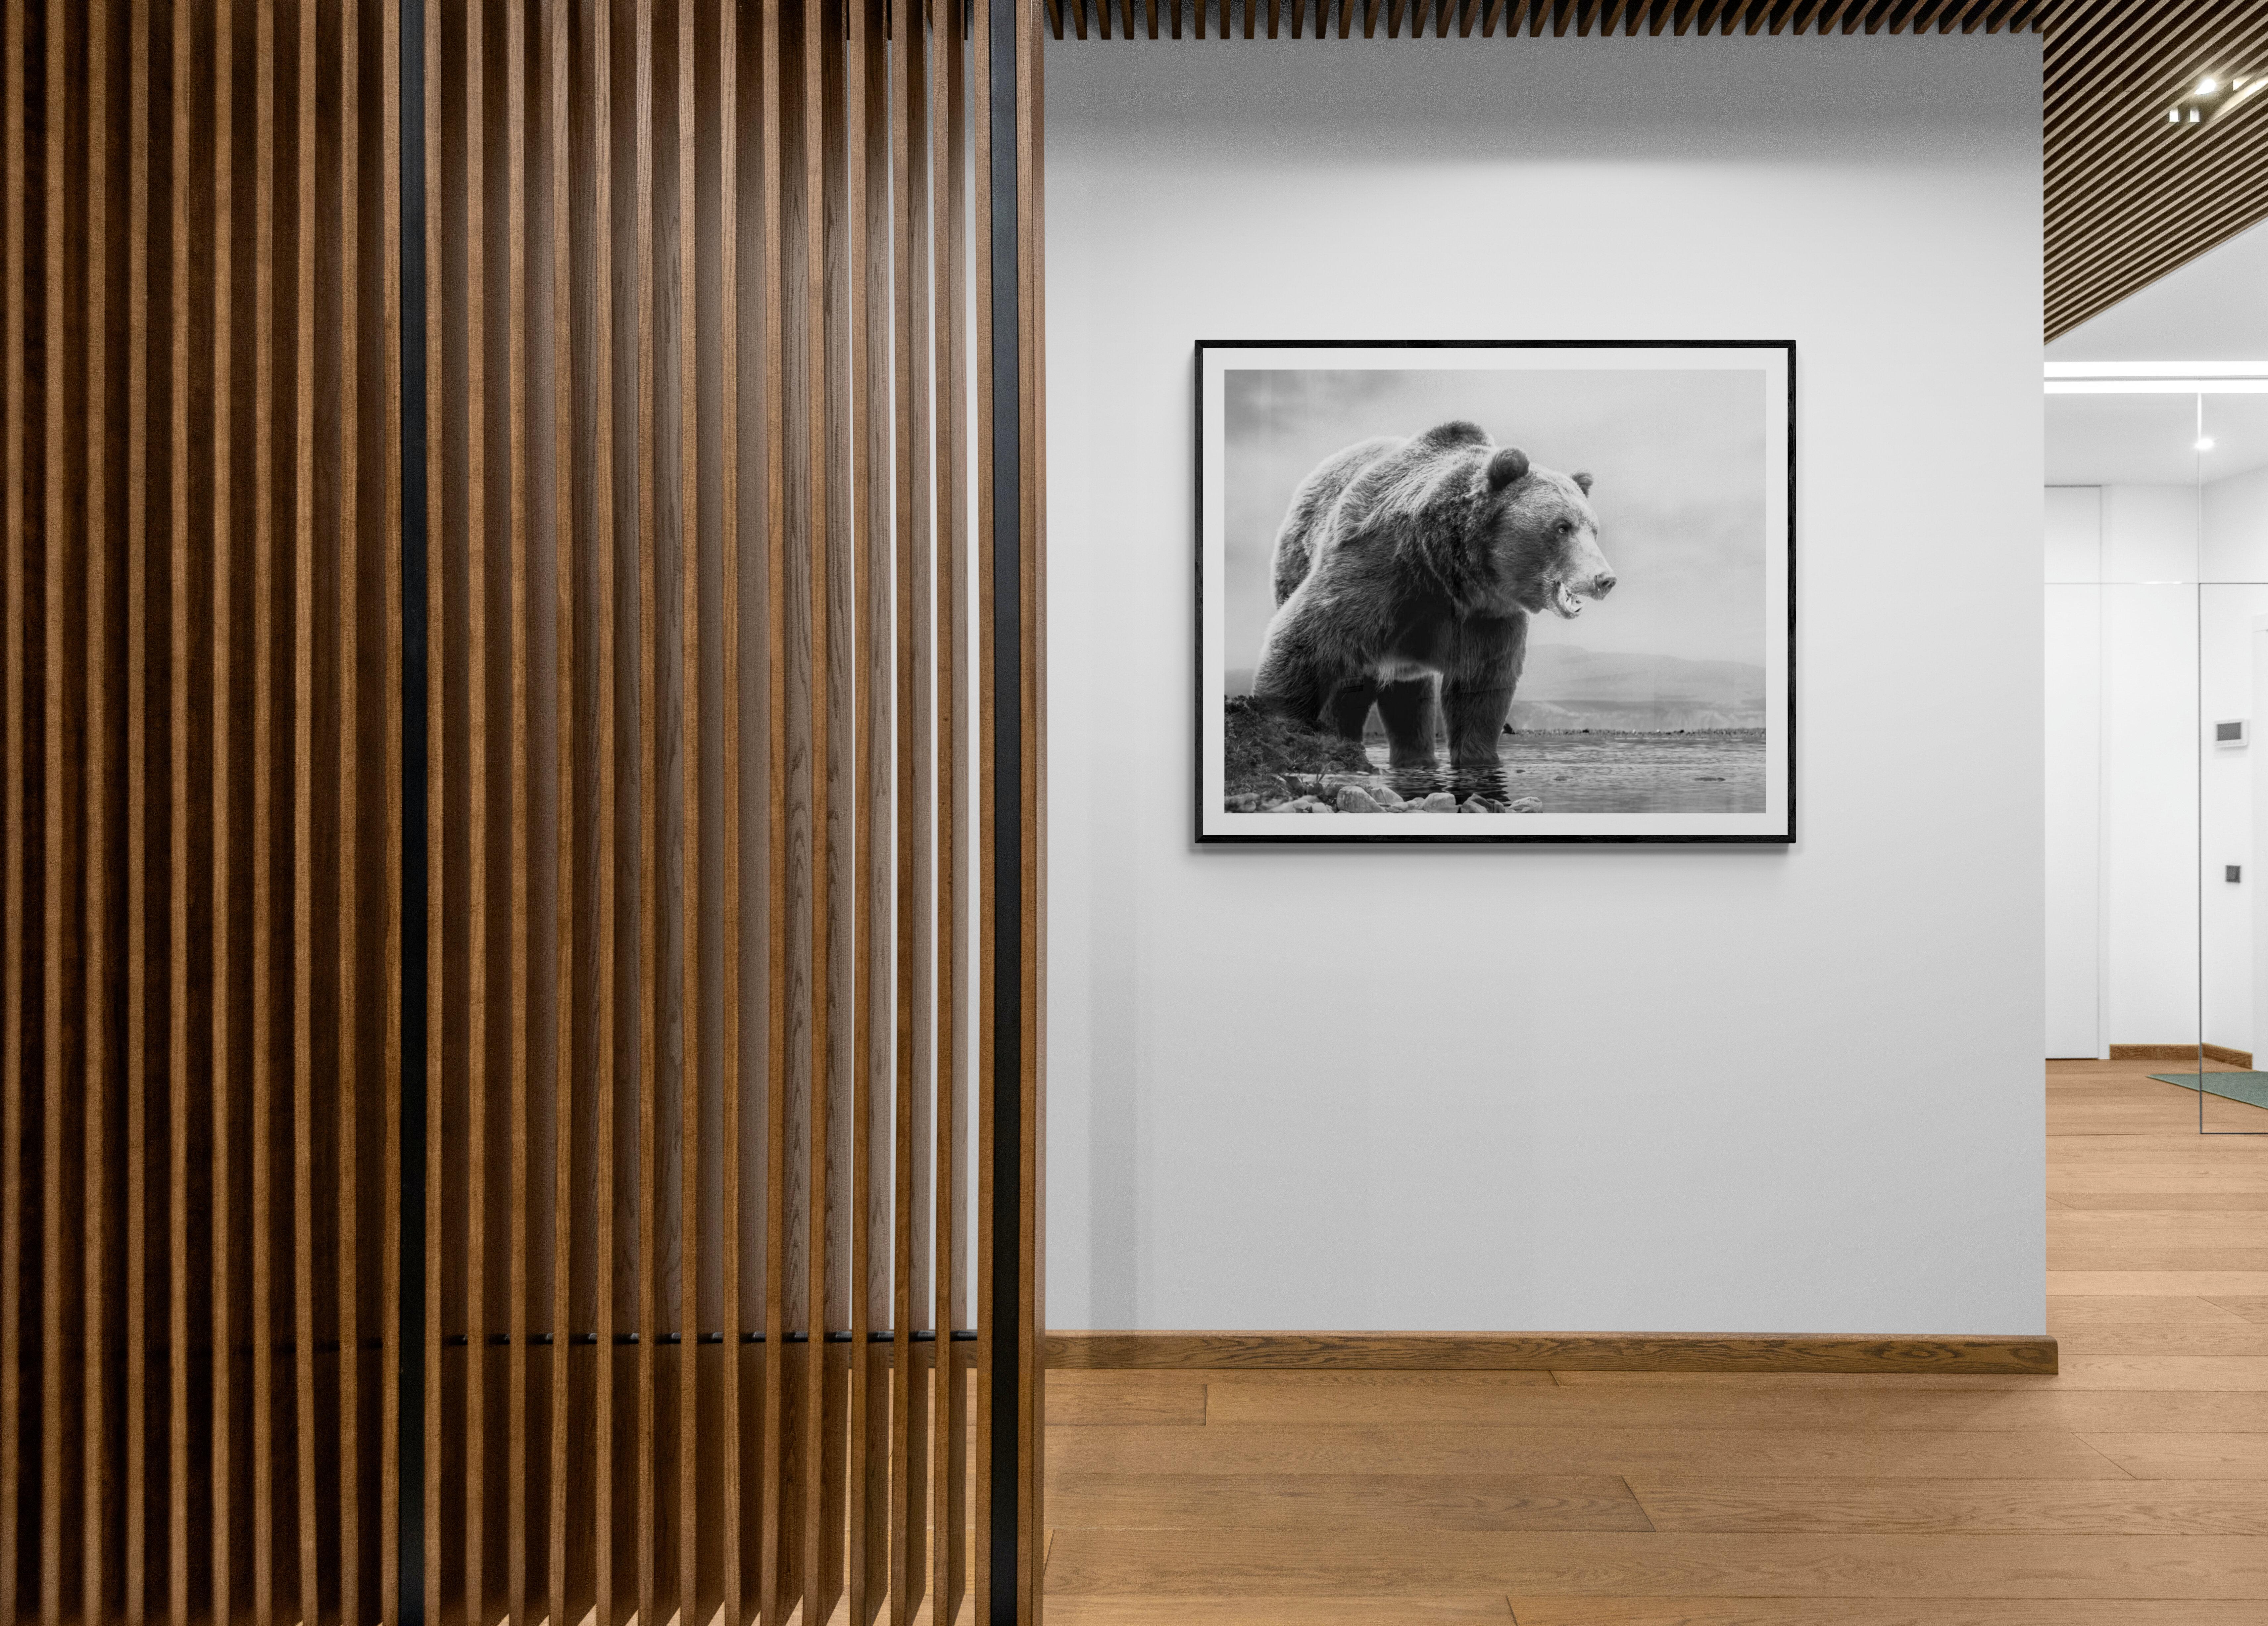 On The Waterfront 36x48 Schwarz-Weiß-Fotografie Kodiak Grizzly Bear Unsigniert – Print von Shane Russeck